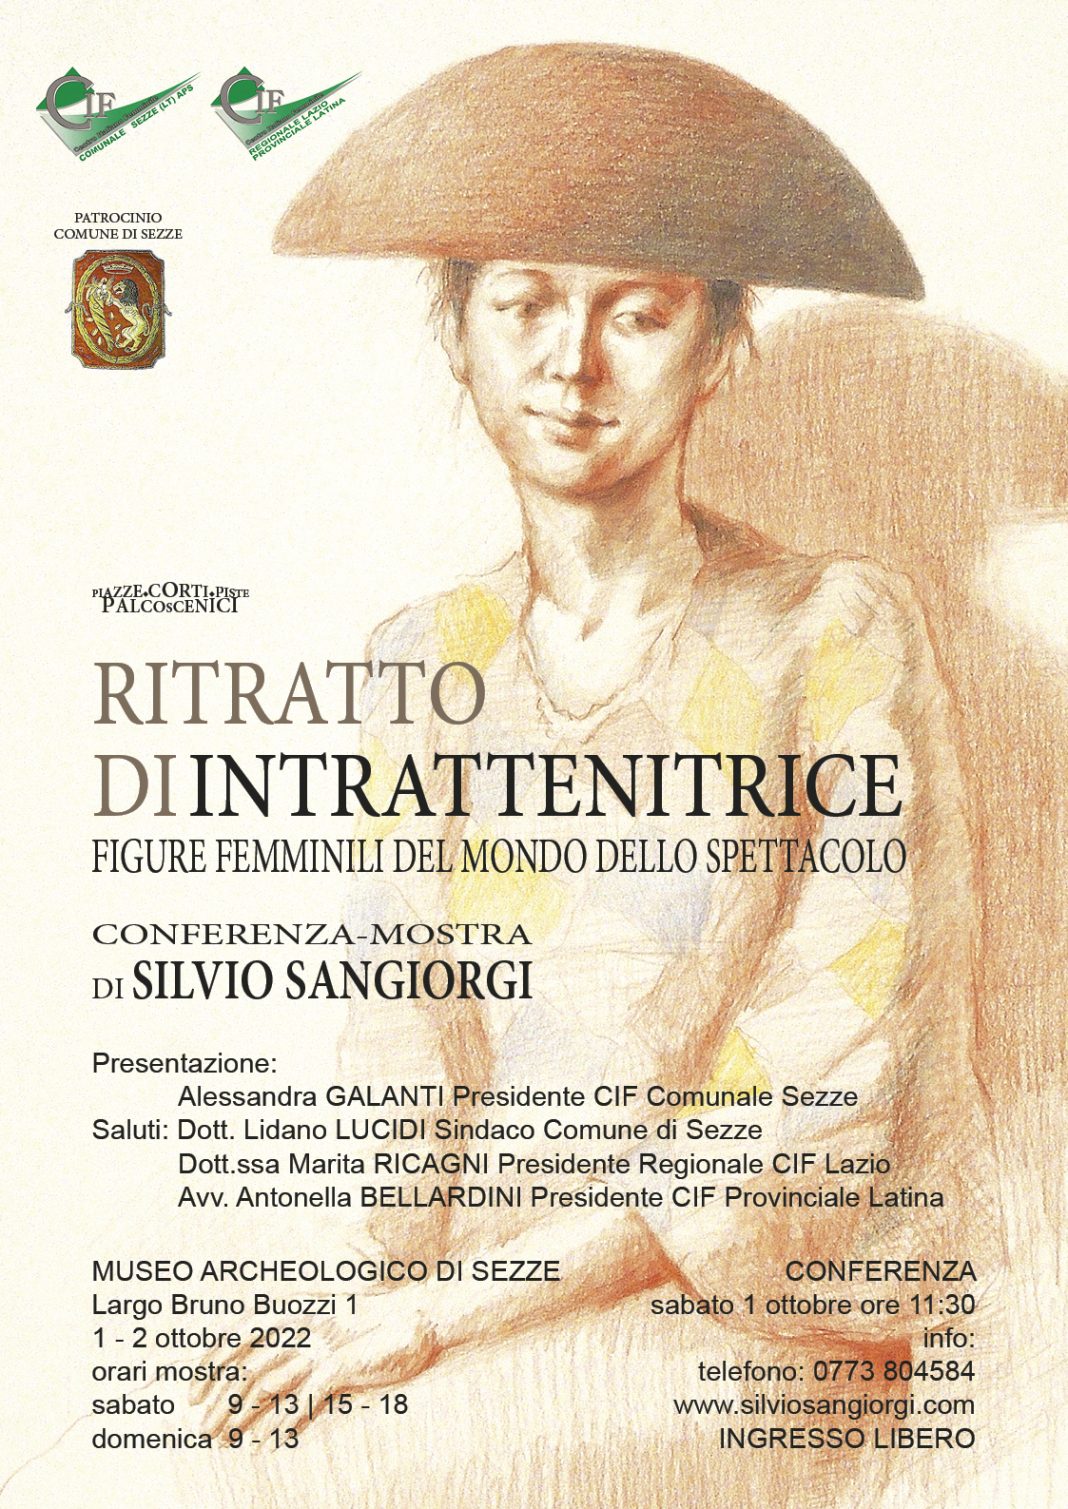 Silvio Sangiorgi – Ritratto di intrattenitricehttps://www.exibart.com/repository/media/formidable/11/img/bf1/Locandina_mostra_CIF_2022-1068x1509.jpg